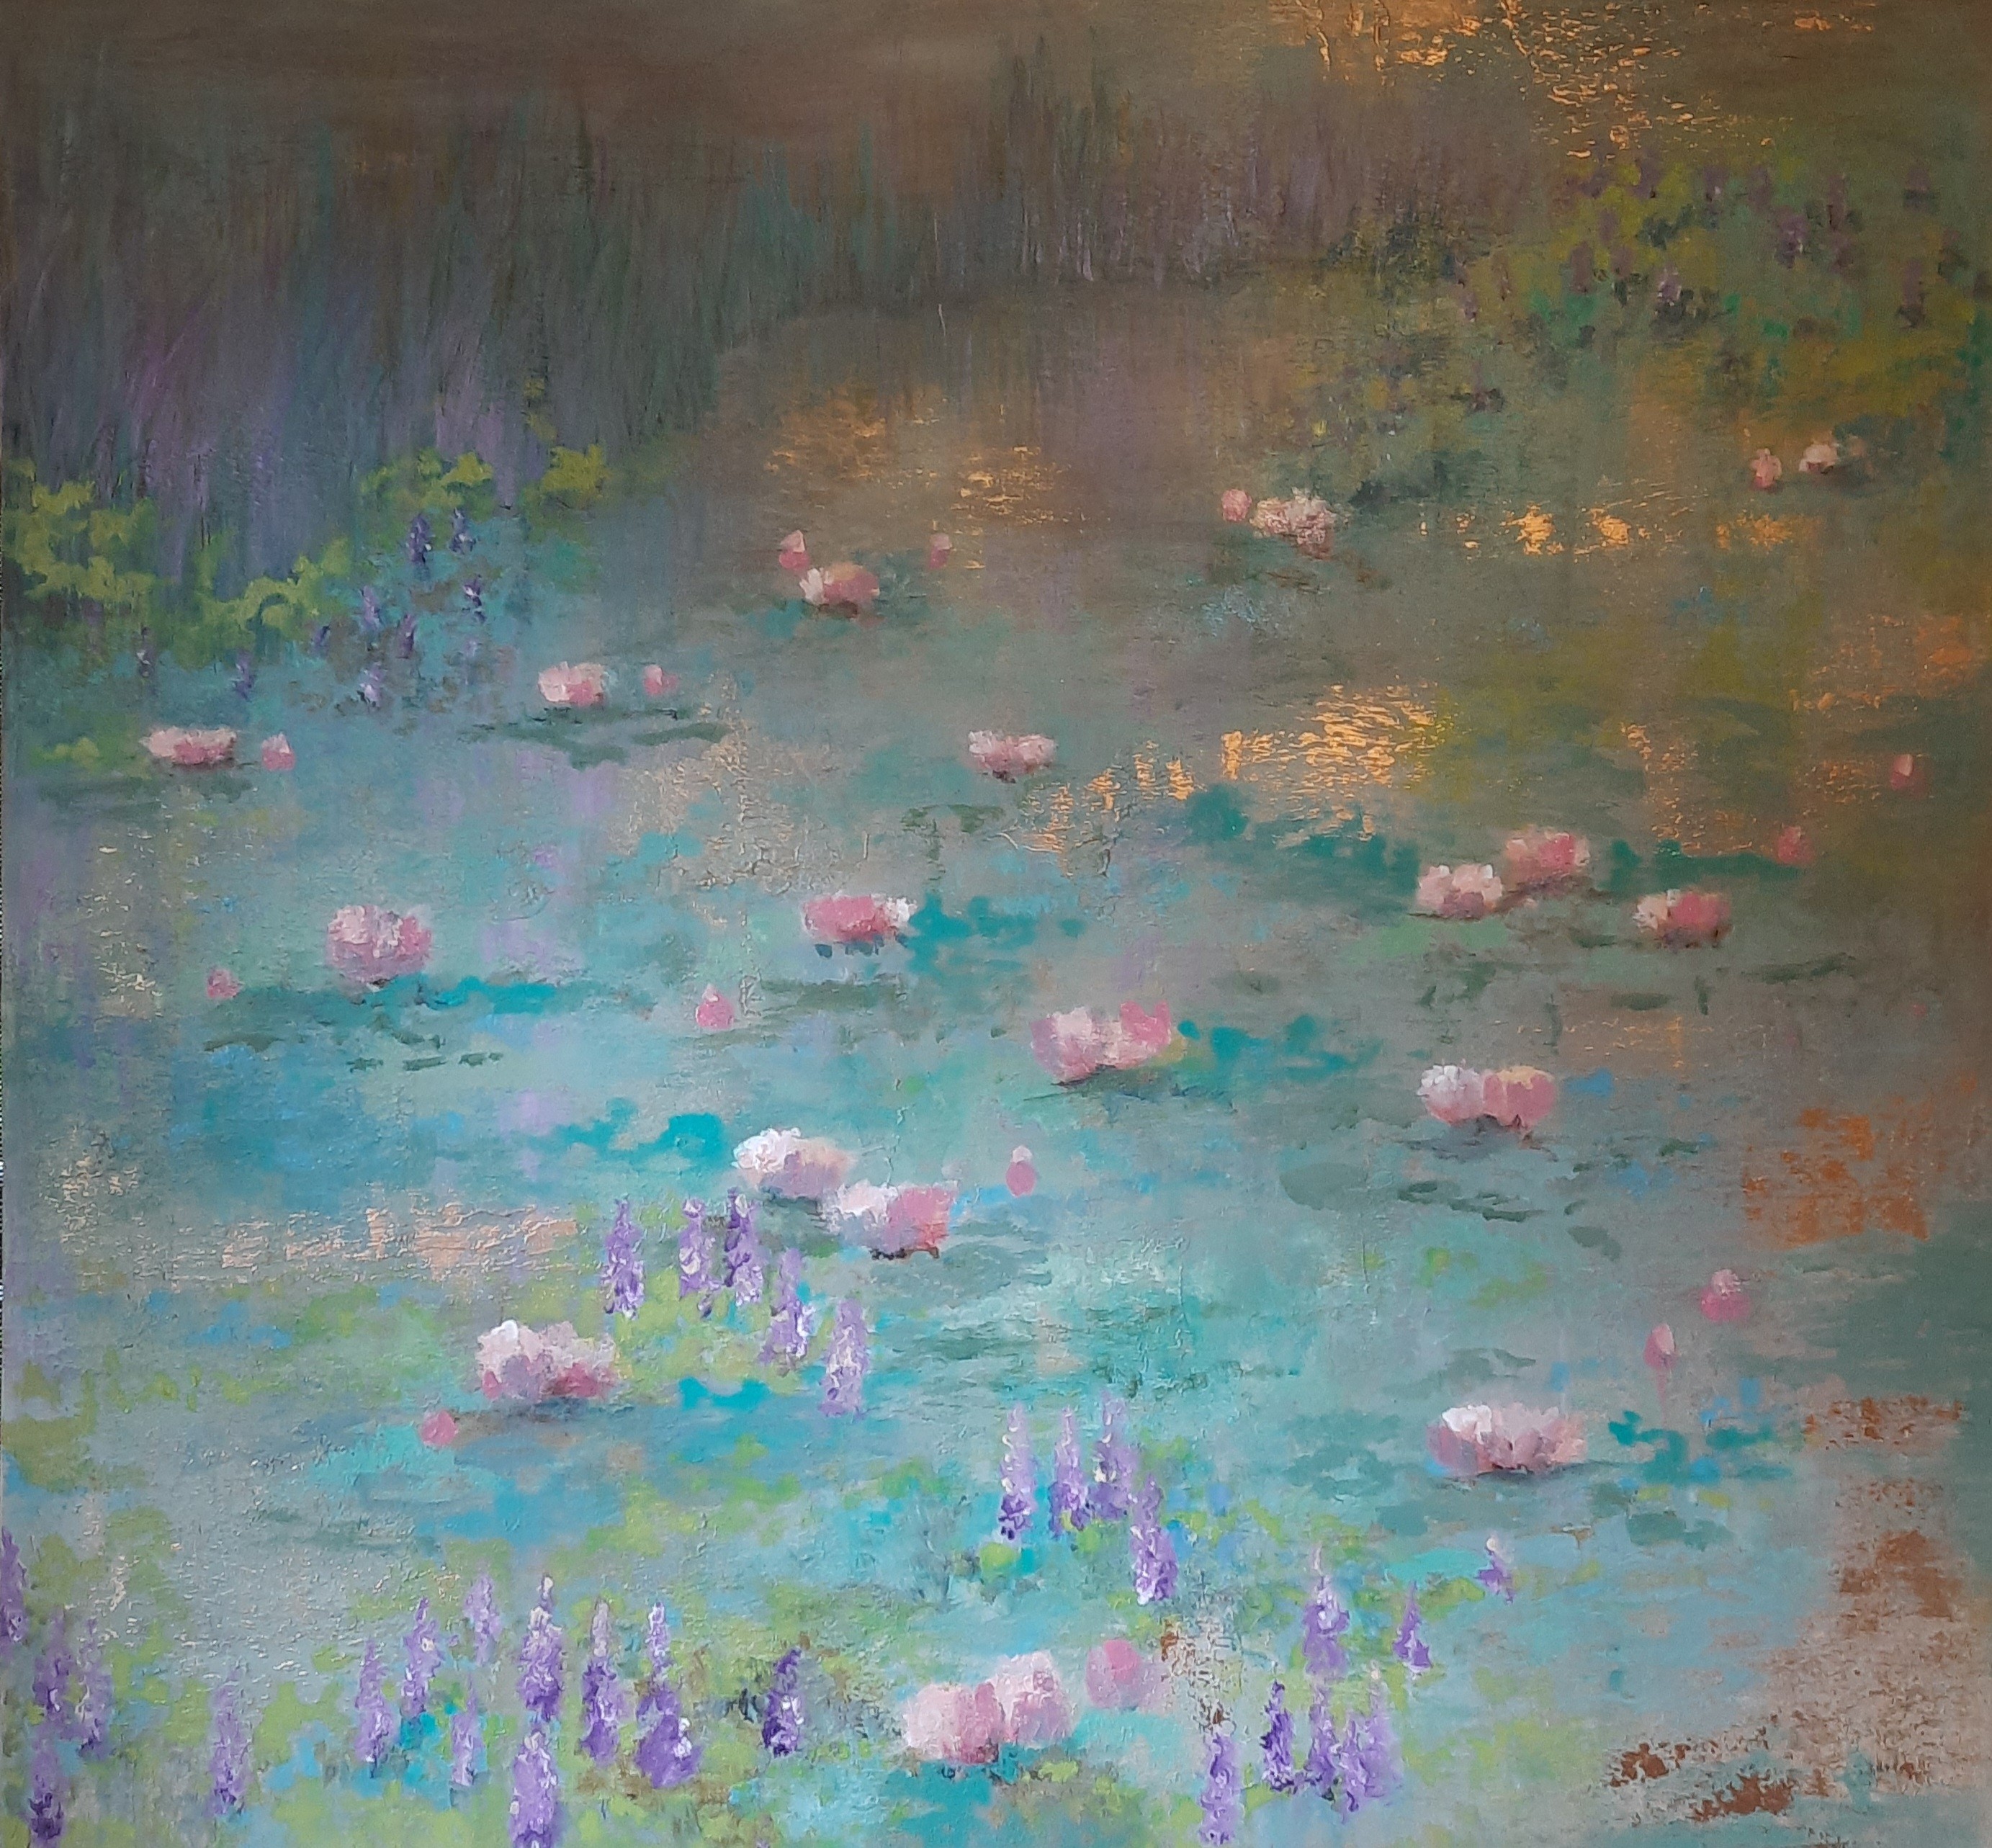 Lotus fantasy by Jean wijesekera